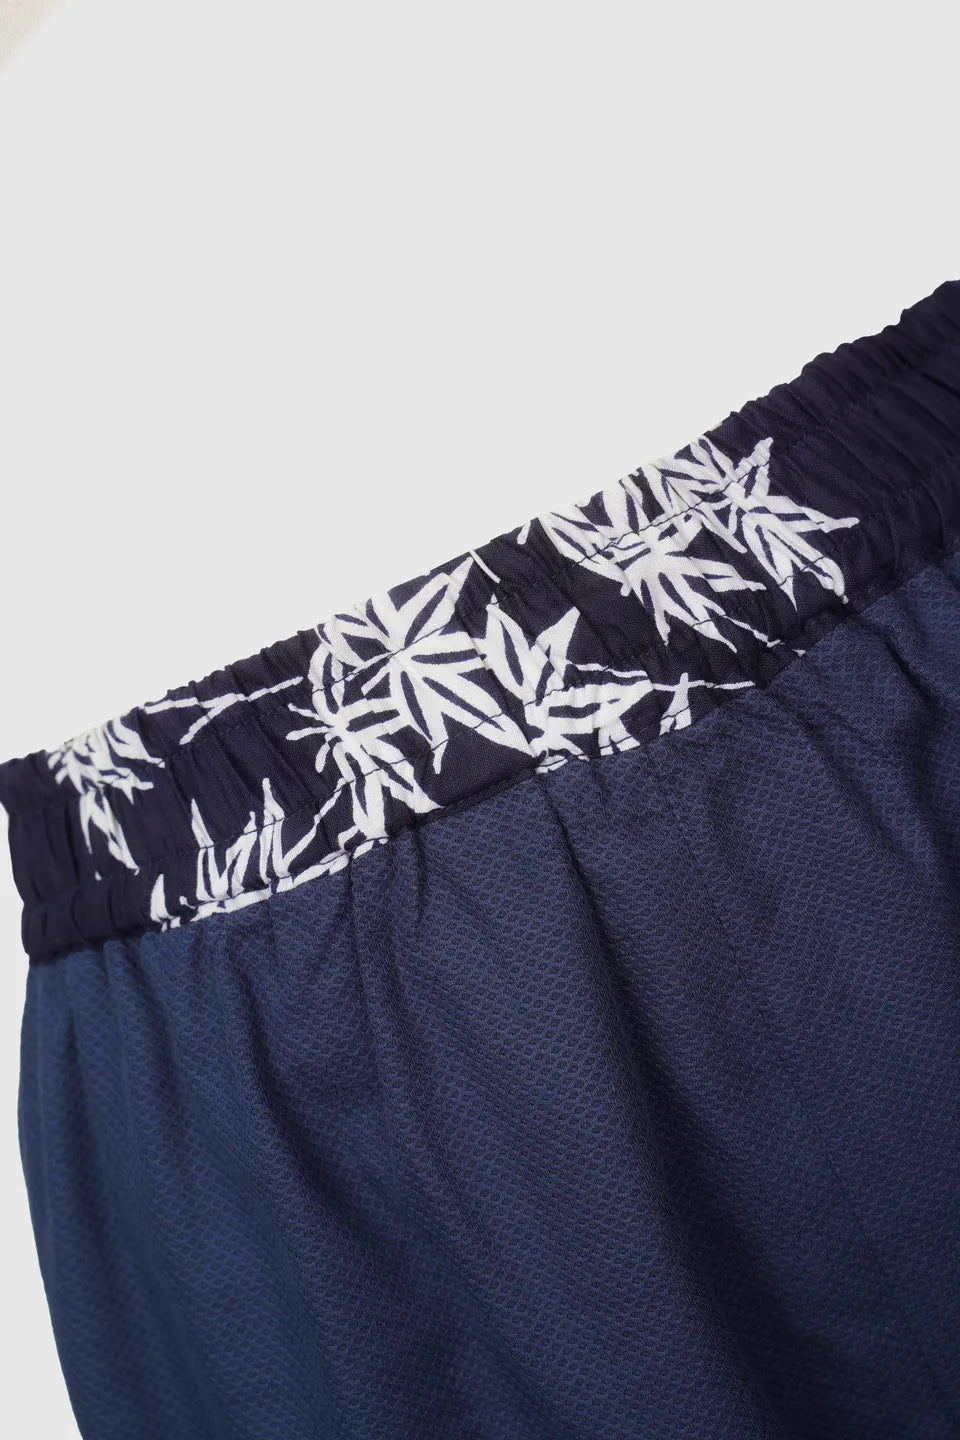 Italian Cotton Lantern Pants with Yukata Patch Pockets | Passeggiata Elegante